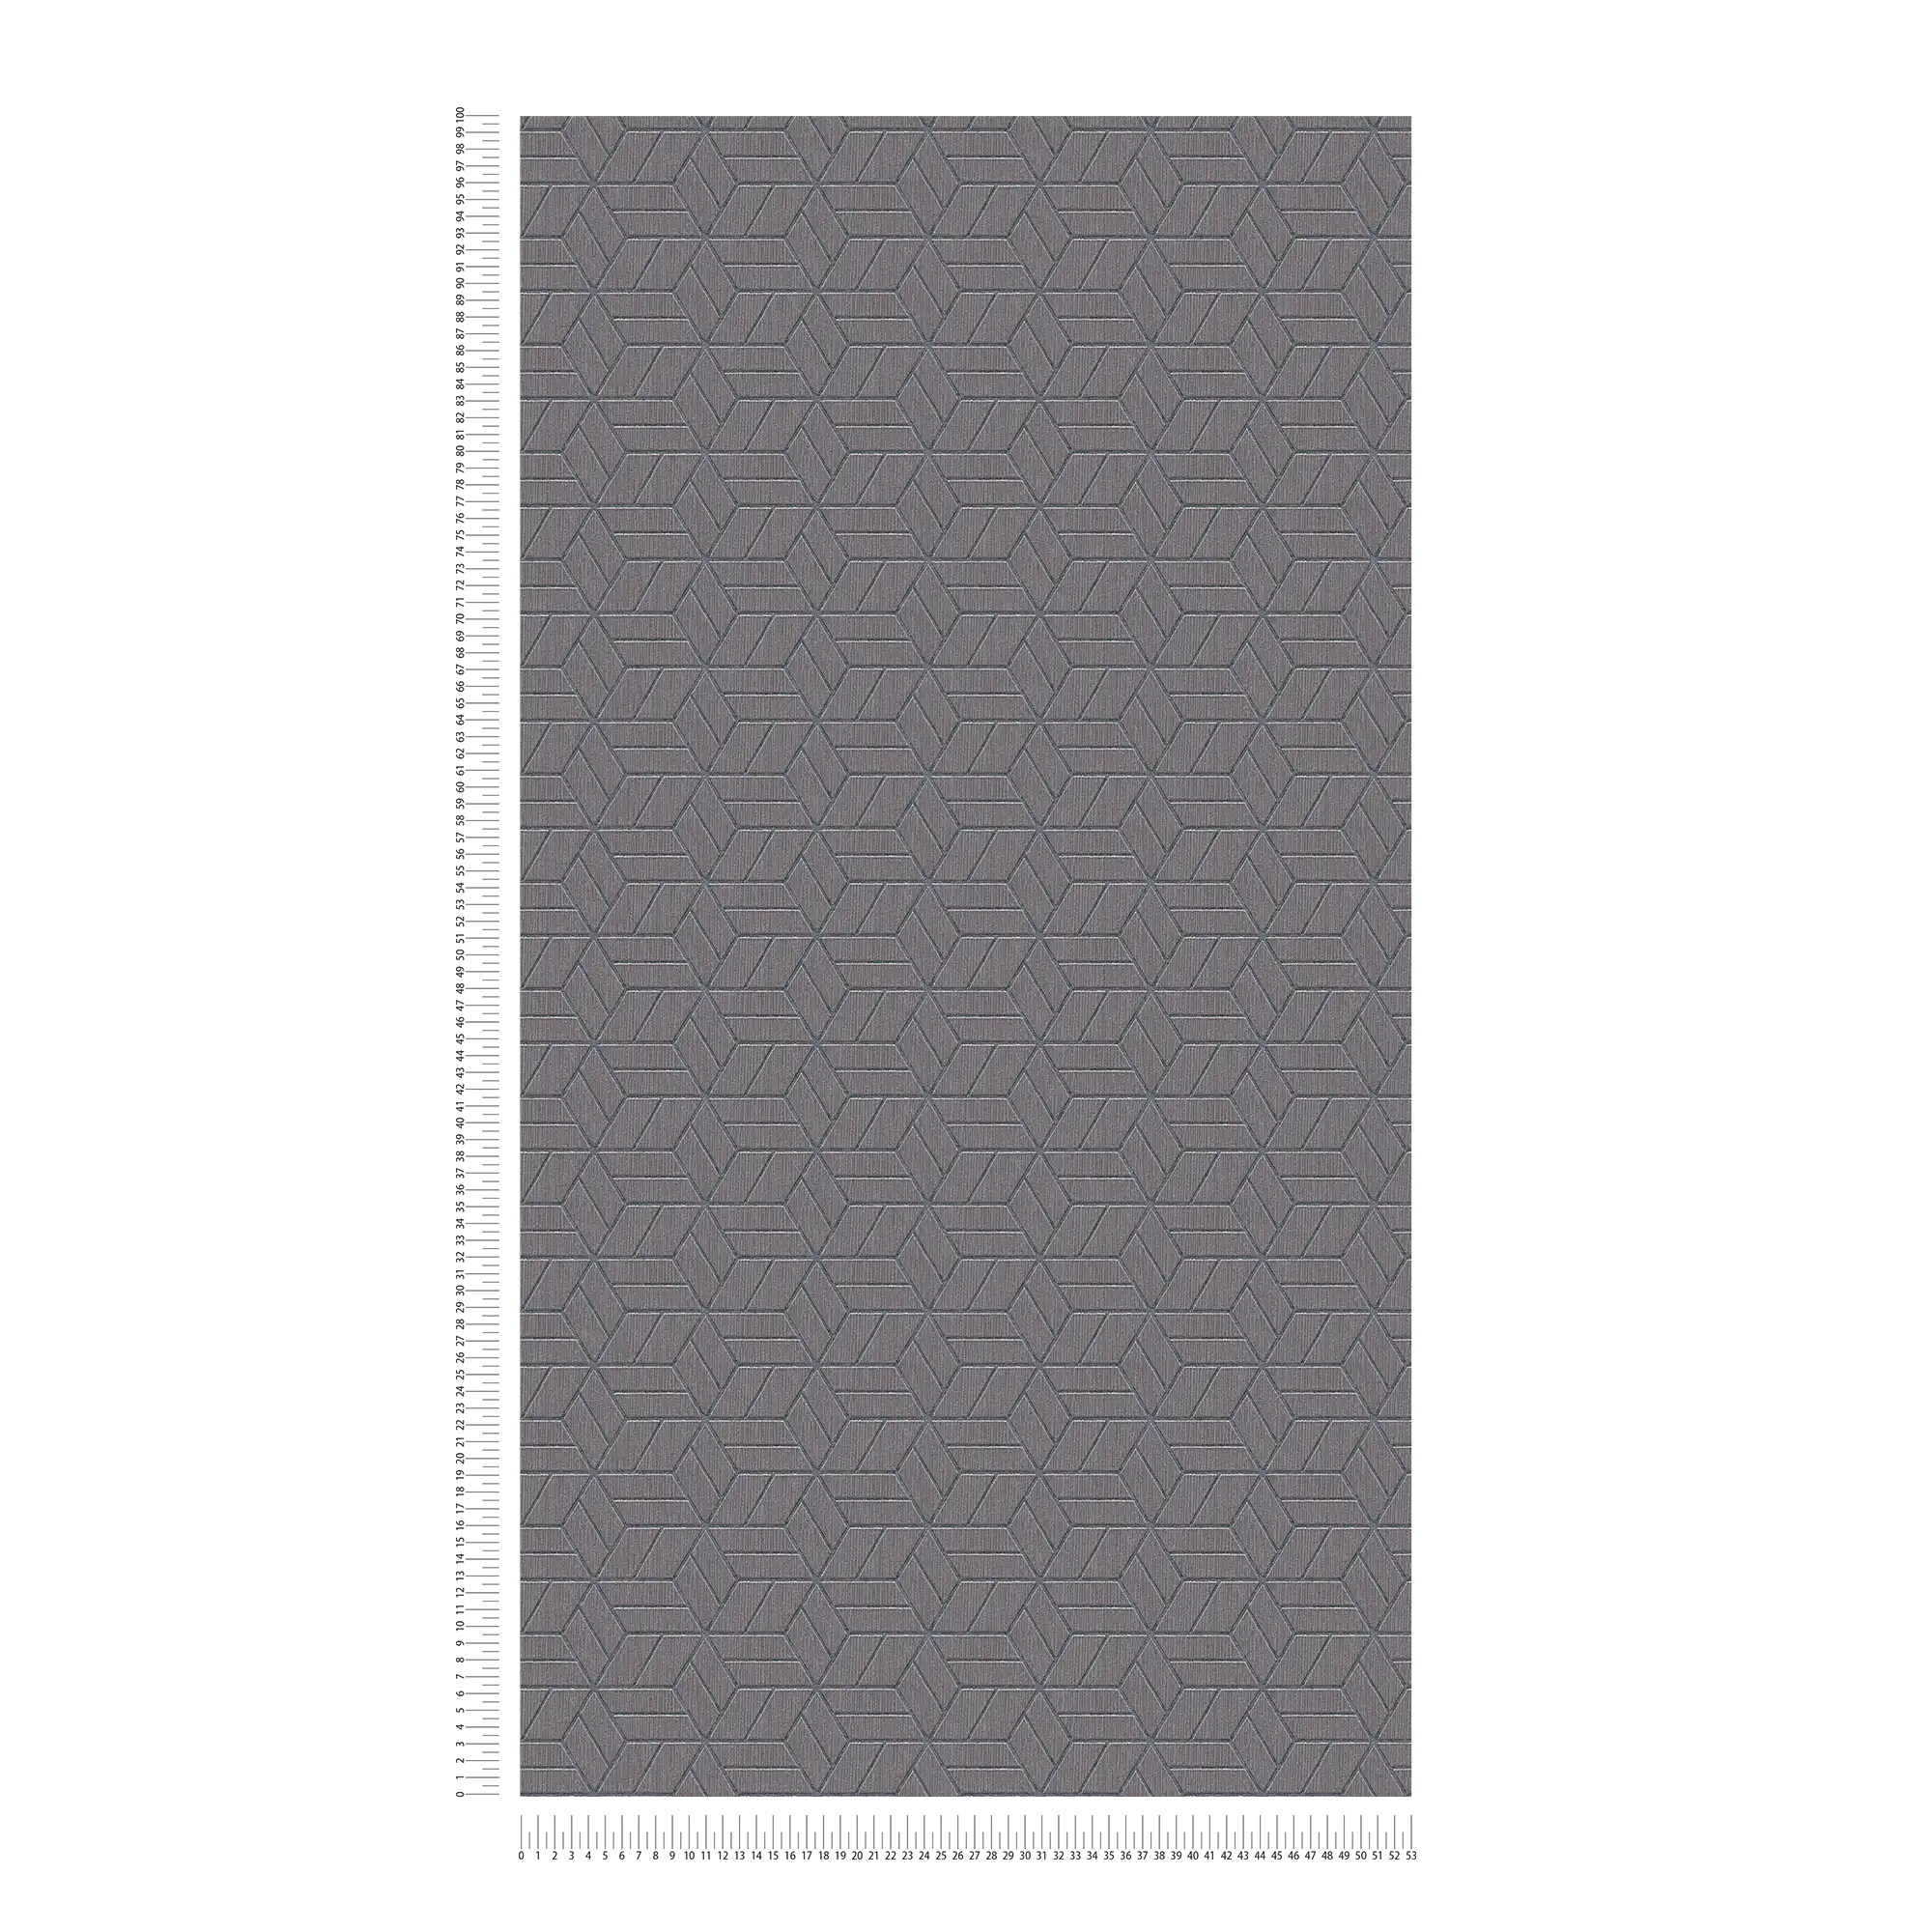             Carta da parati con motivo geometrico ed effetto glitter - grigio, argento
        